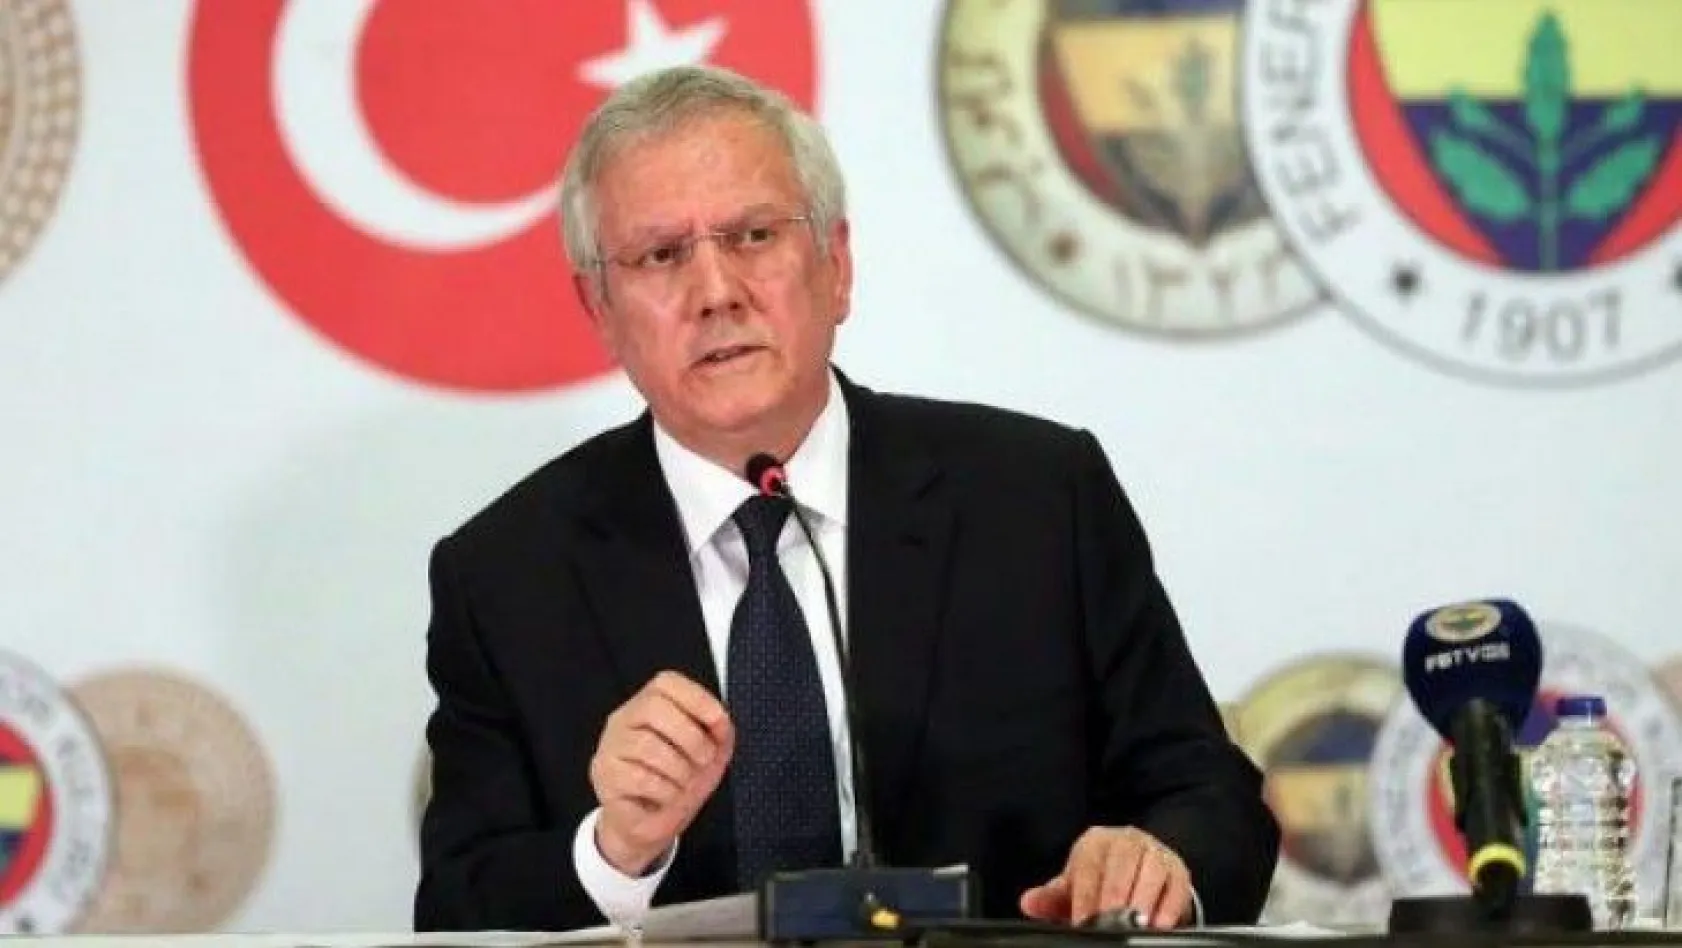 Fenerbahçe Kulübü Eski Başkanı Aziz Yıldırım aday olacak mı?